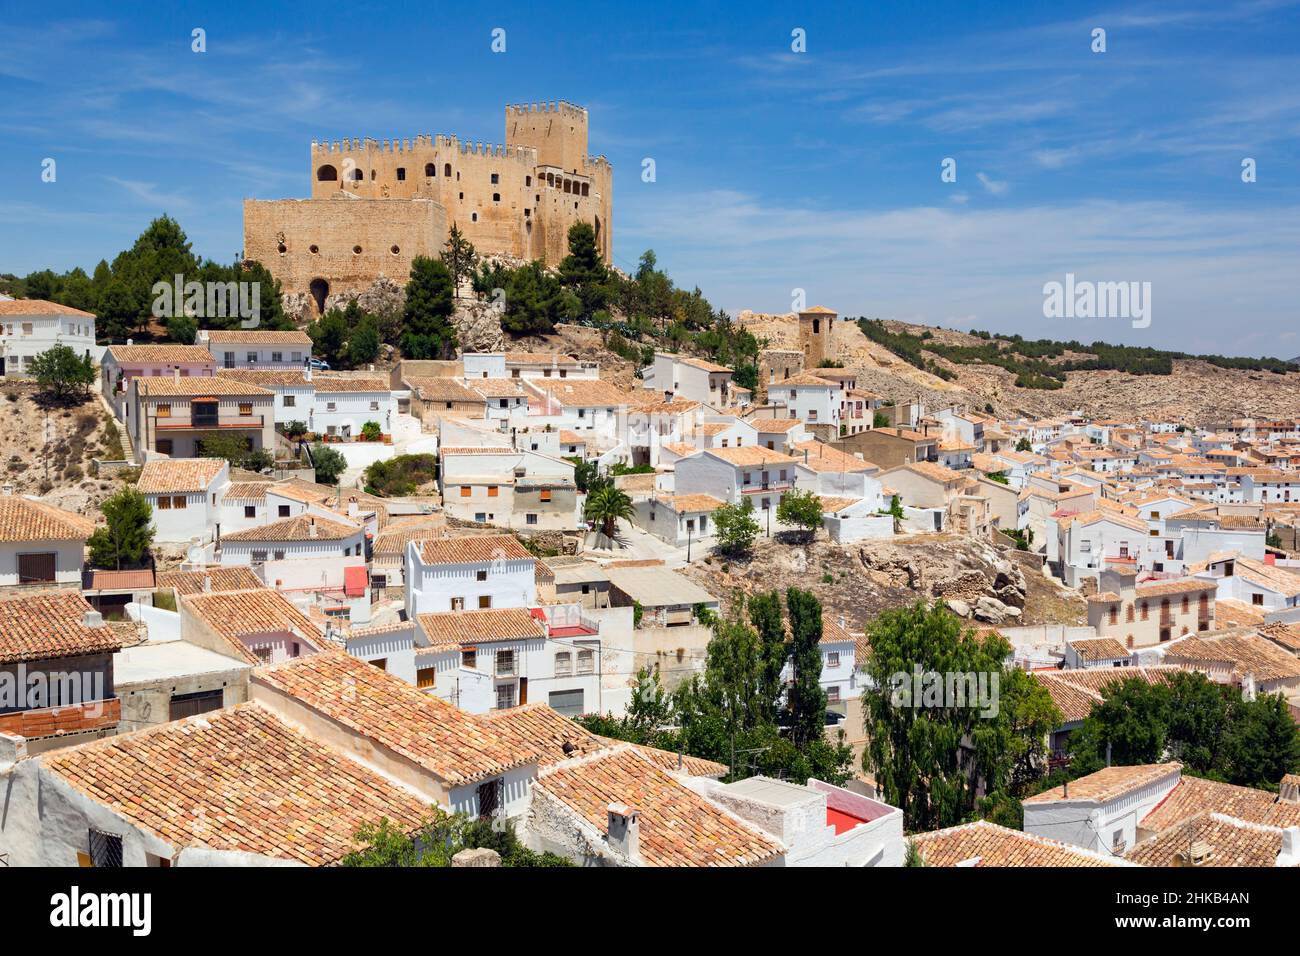 Velez-Blanco, Provinz Almeria, Andalusien, Südspanien. Castillo de los Farjado aus dem 16th. Jahrhundert, Burg des Farjado, in der ganzen Stadt gesehen. Stockfoto